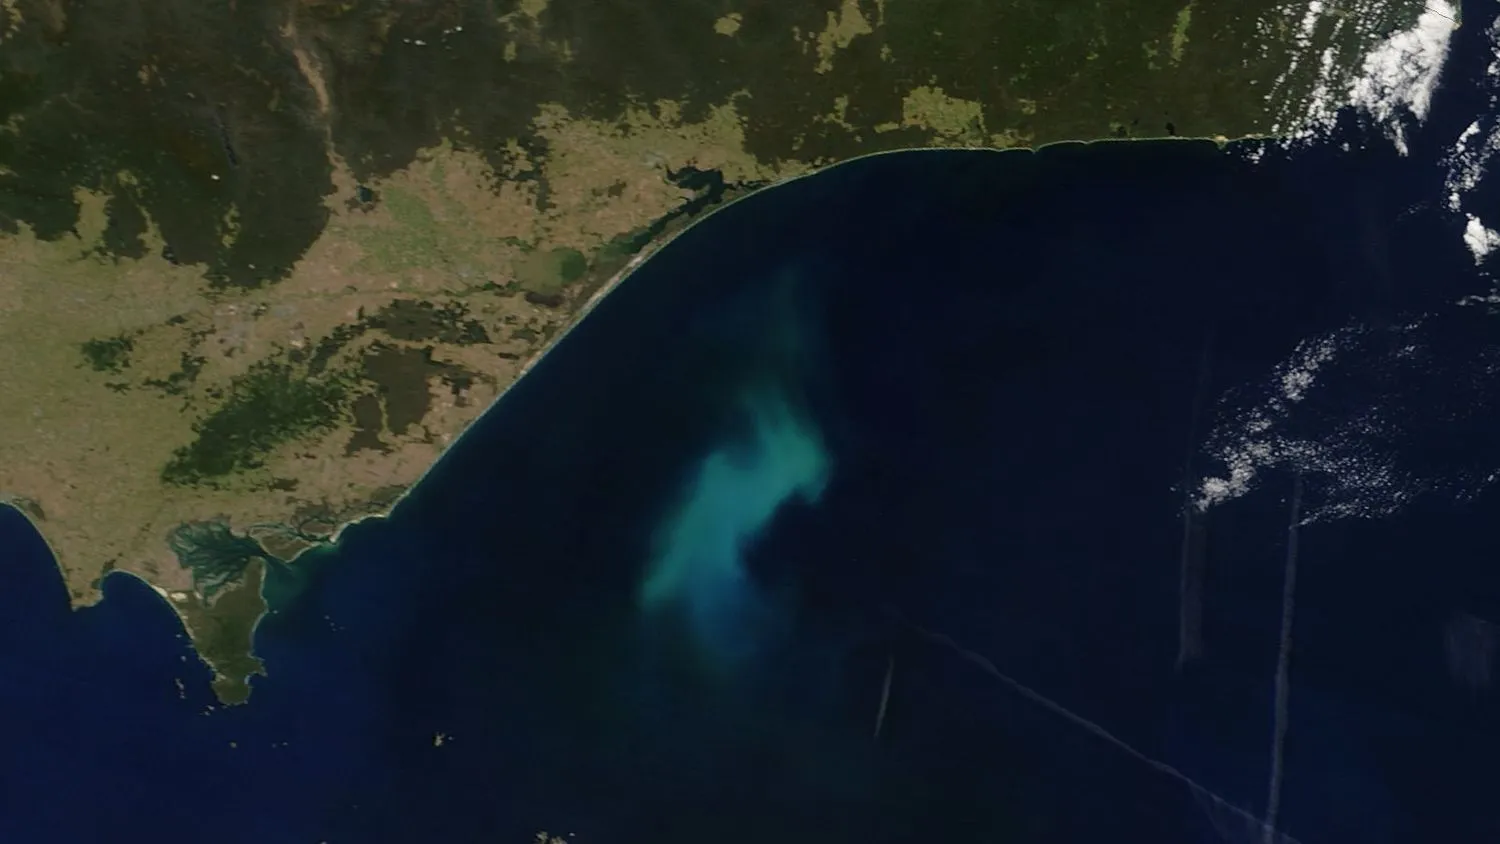 Ein Beispiel für eine Phytoplanktonblüte vor Südostaustralien, aufgenommen mit dem MODIS-Instrument (Moderate Resolution Imaging Spectroradiometer) der NASA.